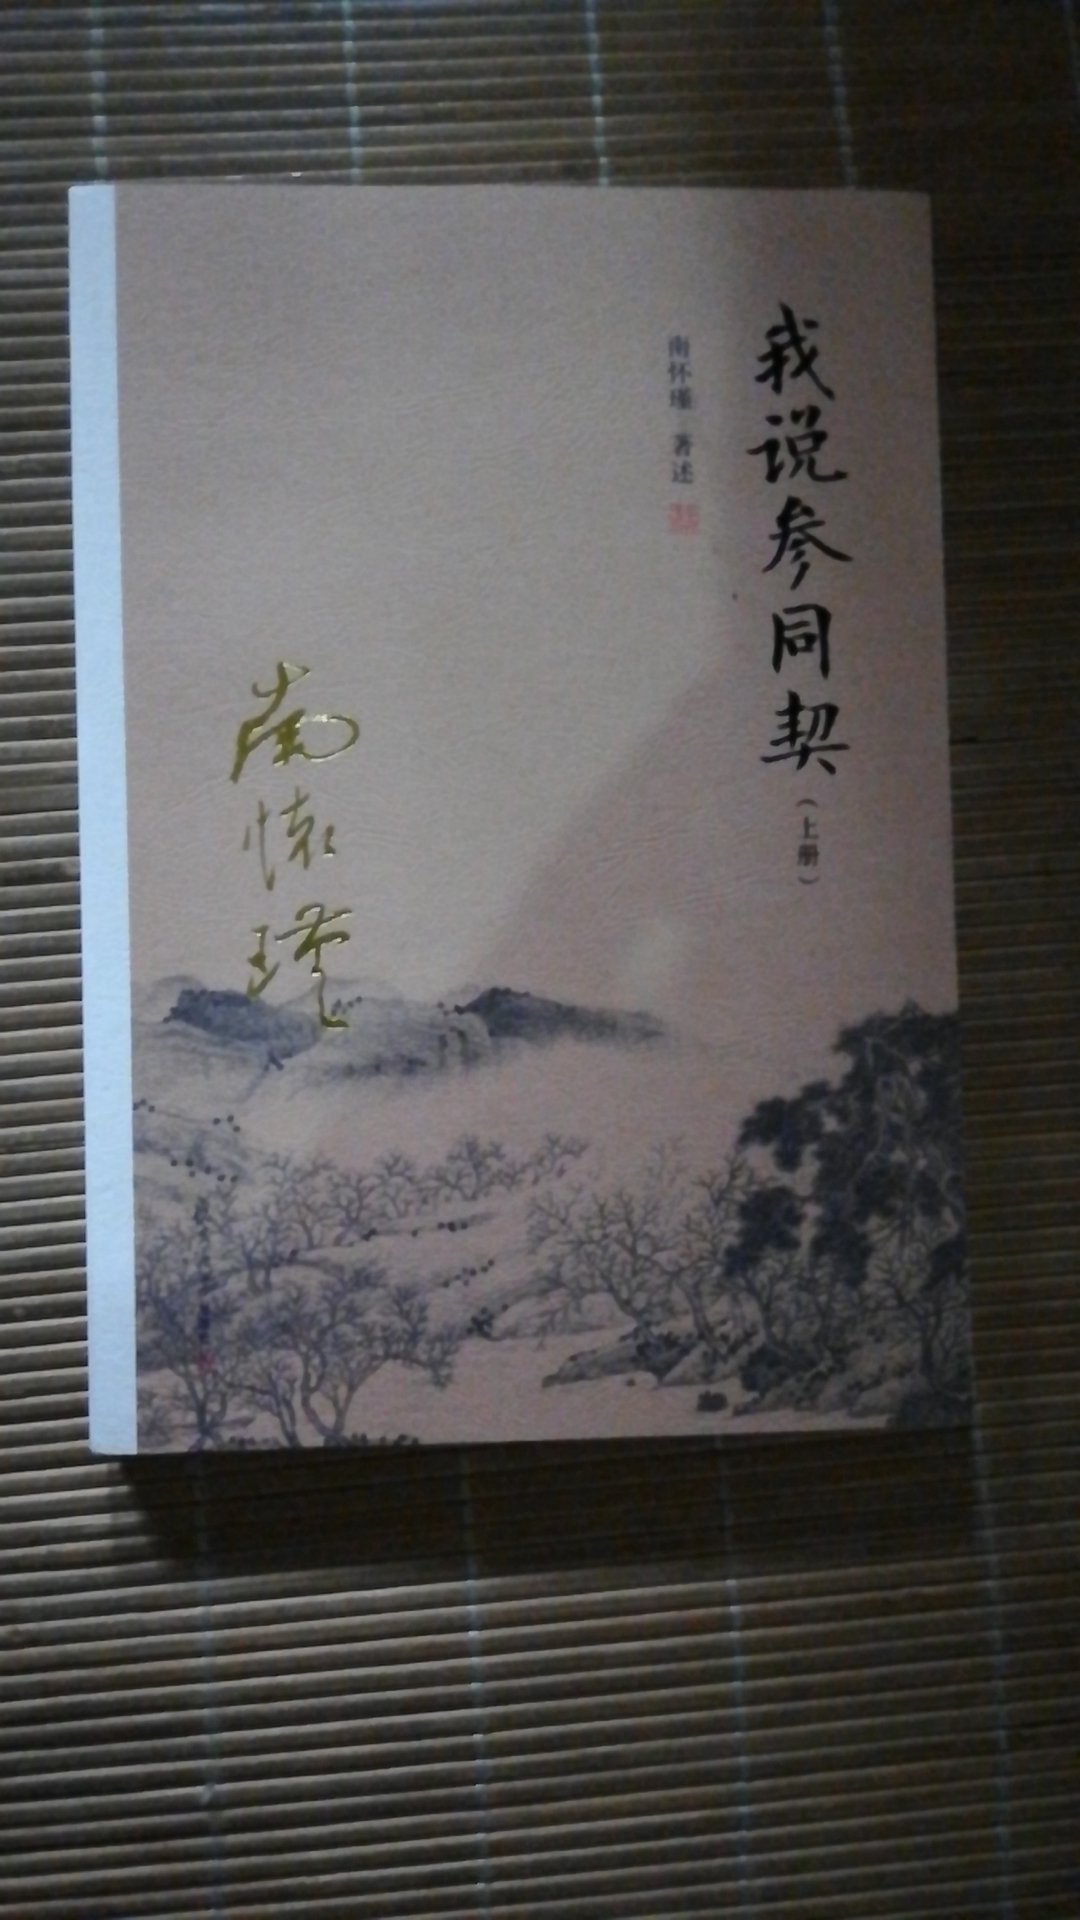 喜欢南怀瑾的书，钦佩他对道家经典的精湛解读。